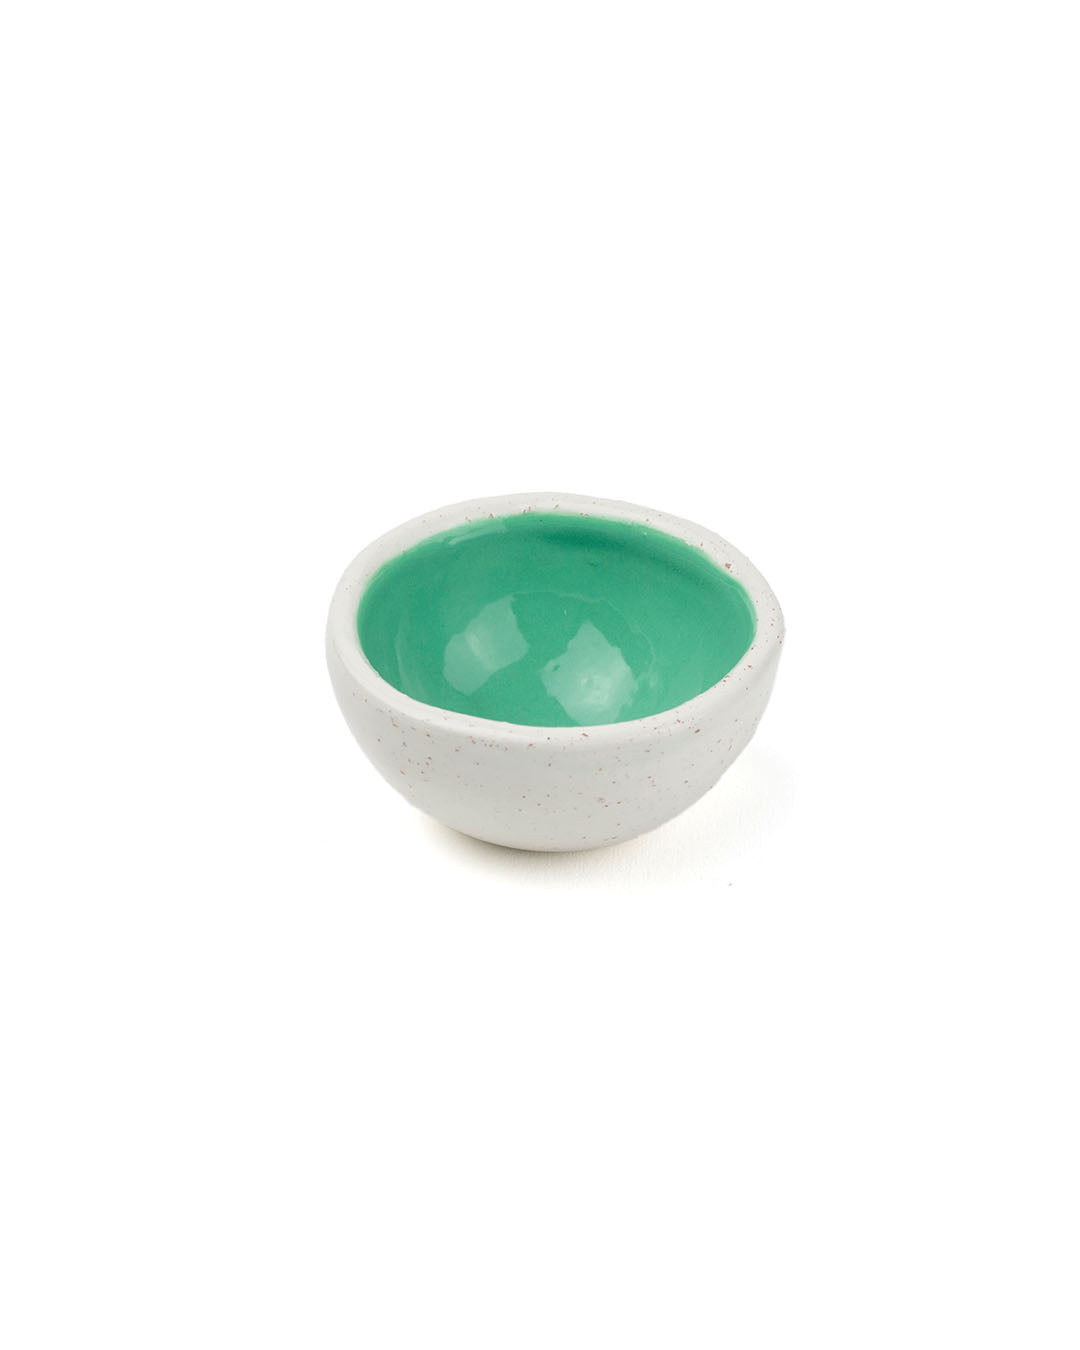 Drops Mini Bowls MIX - Set of 6 - Claytical